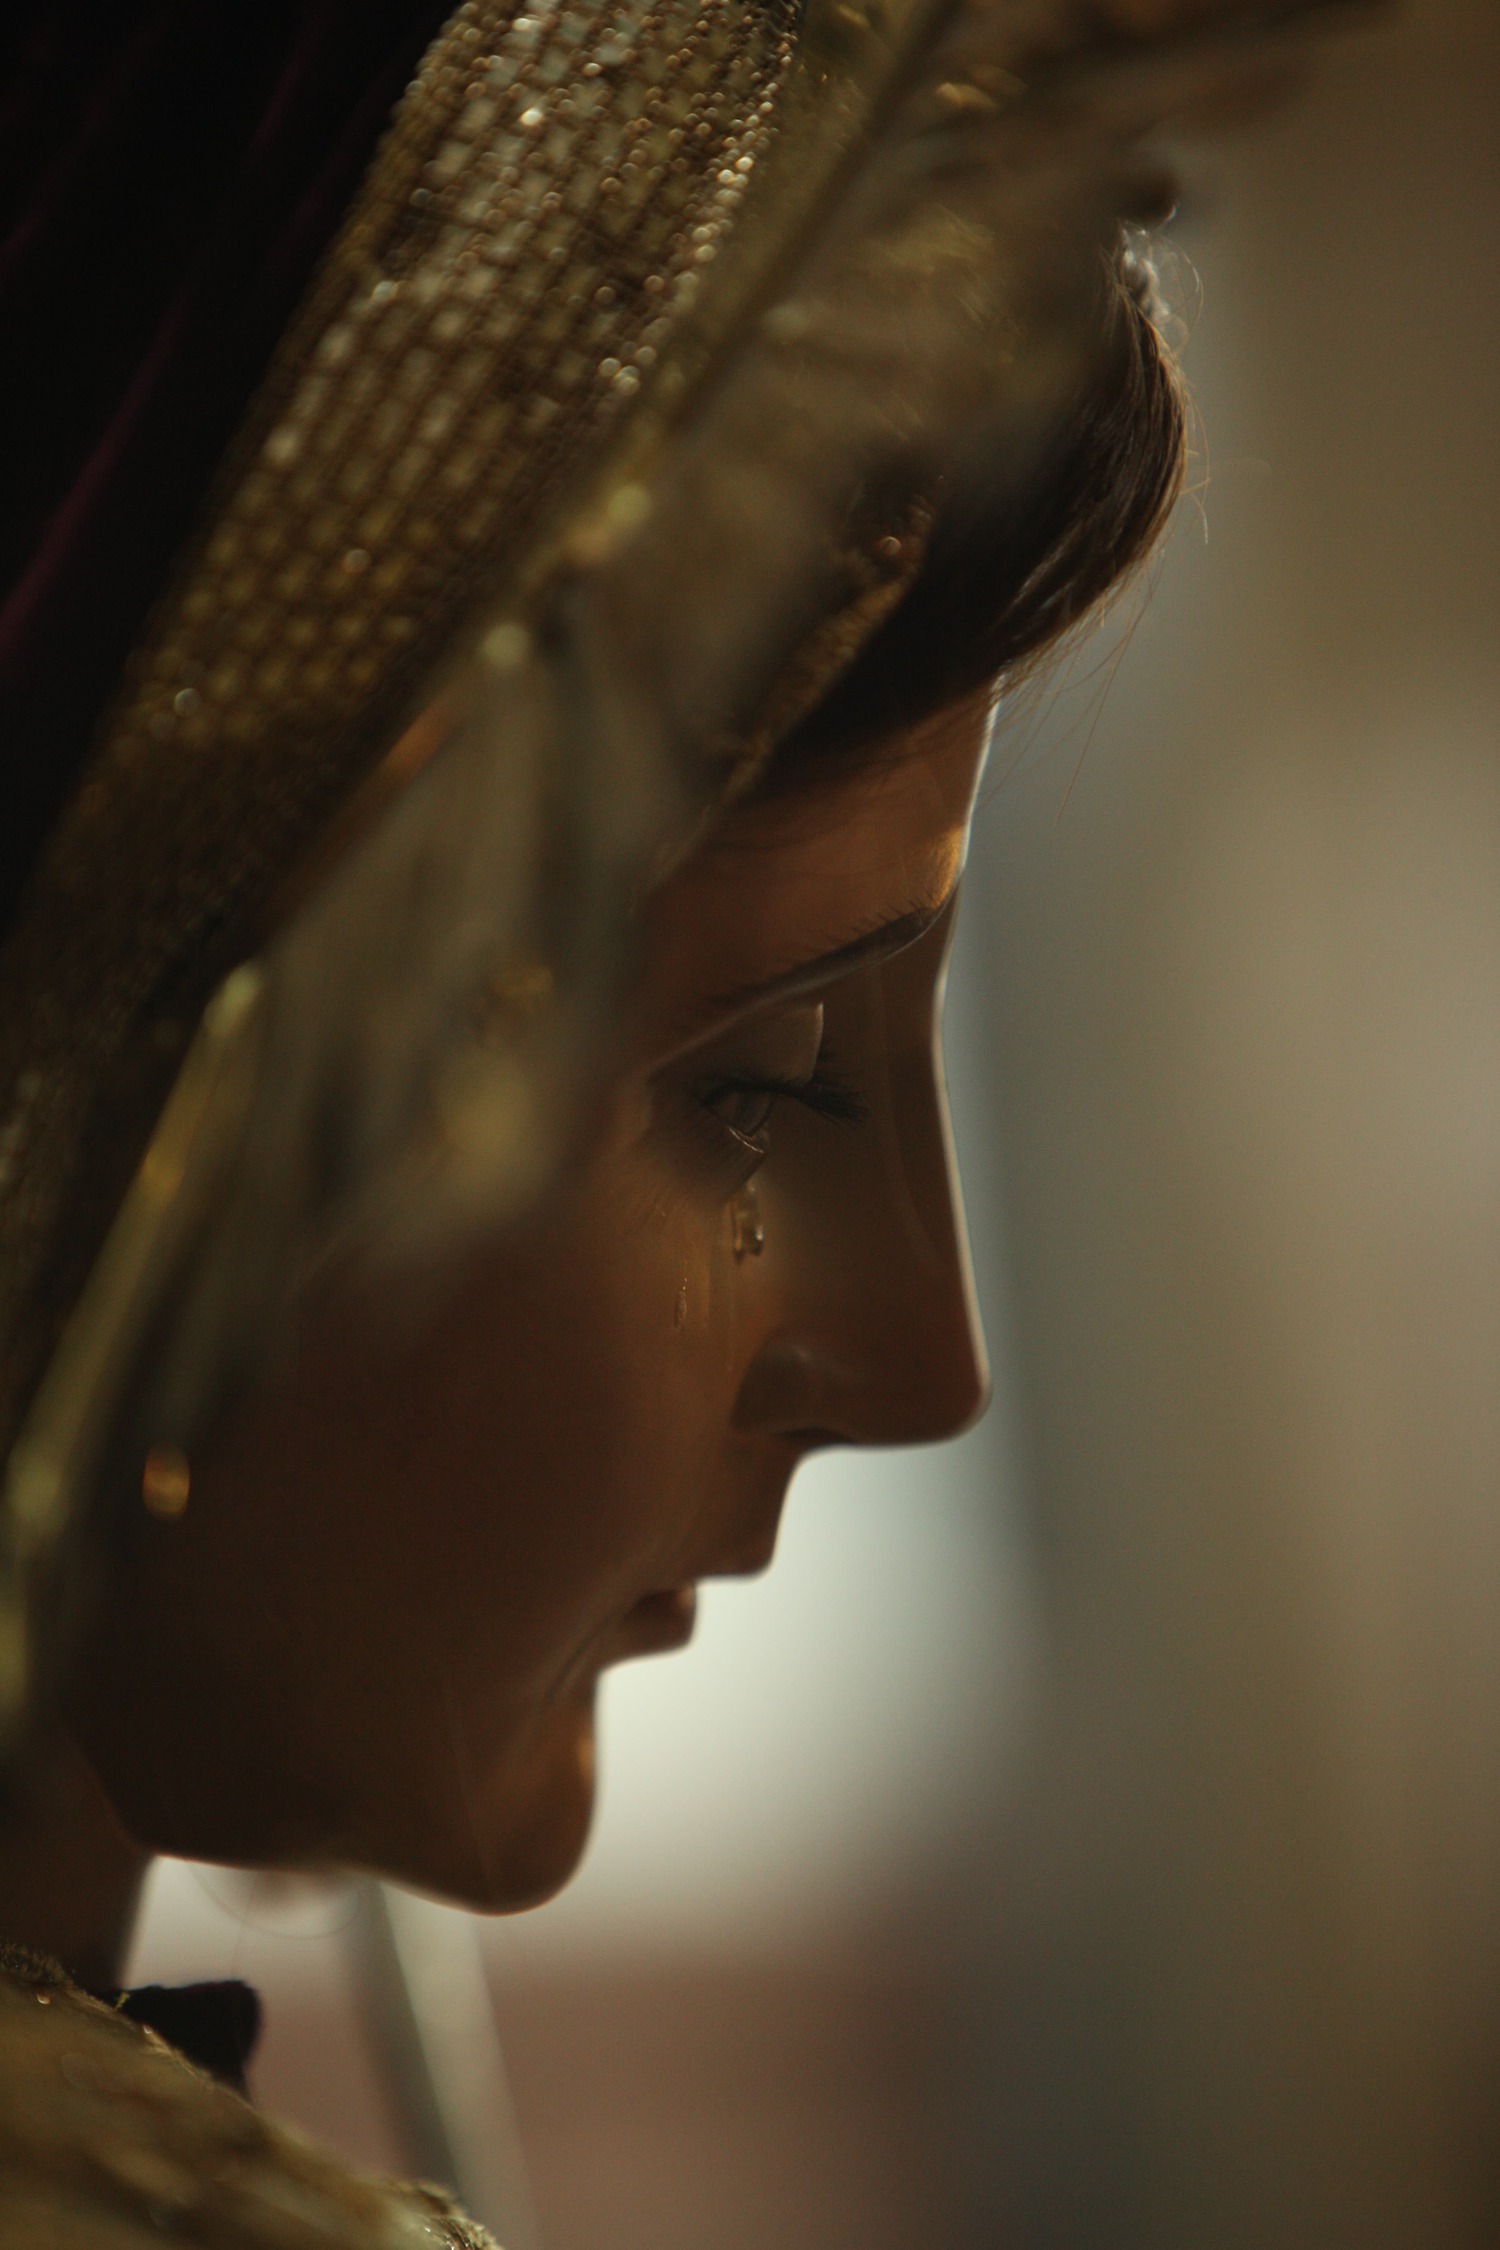 Virgen de Dolores de El Gallito regresa de su restauración